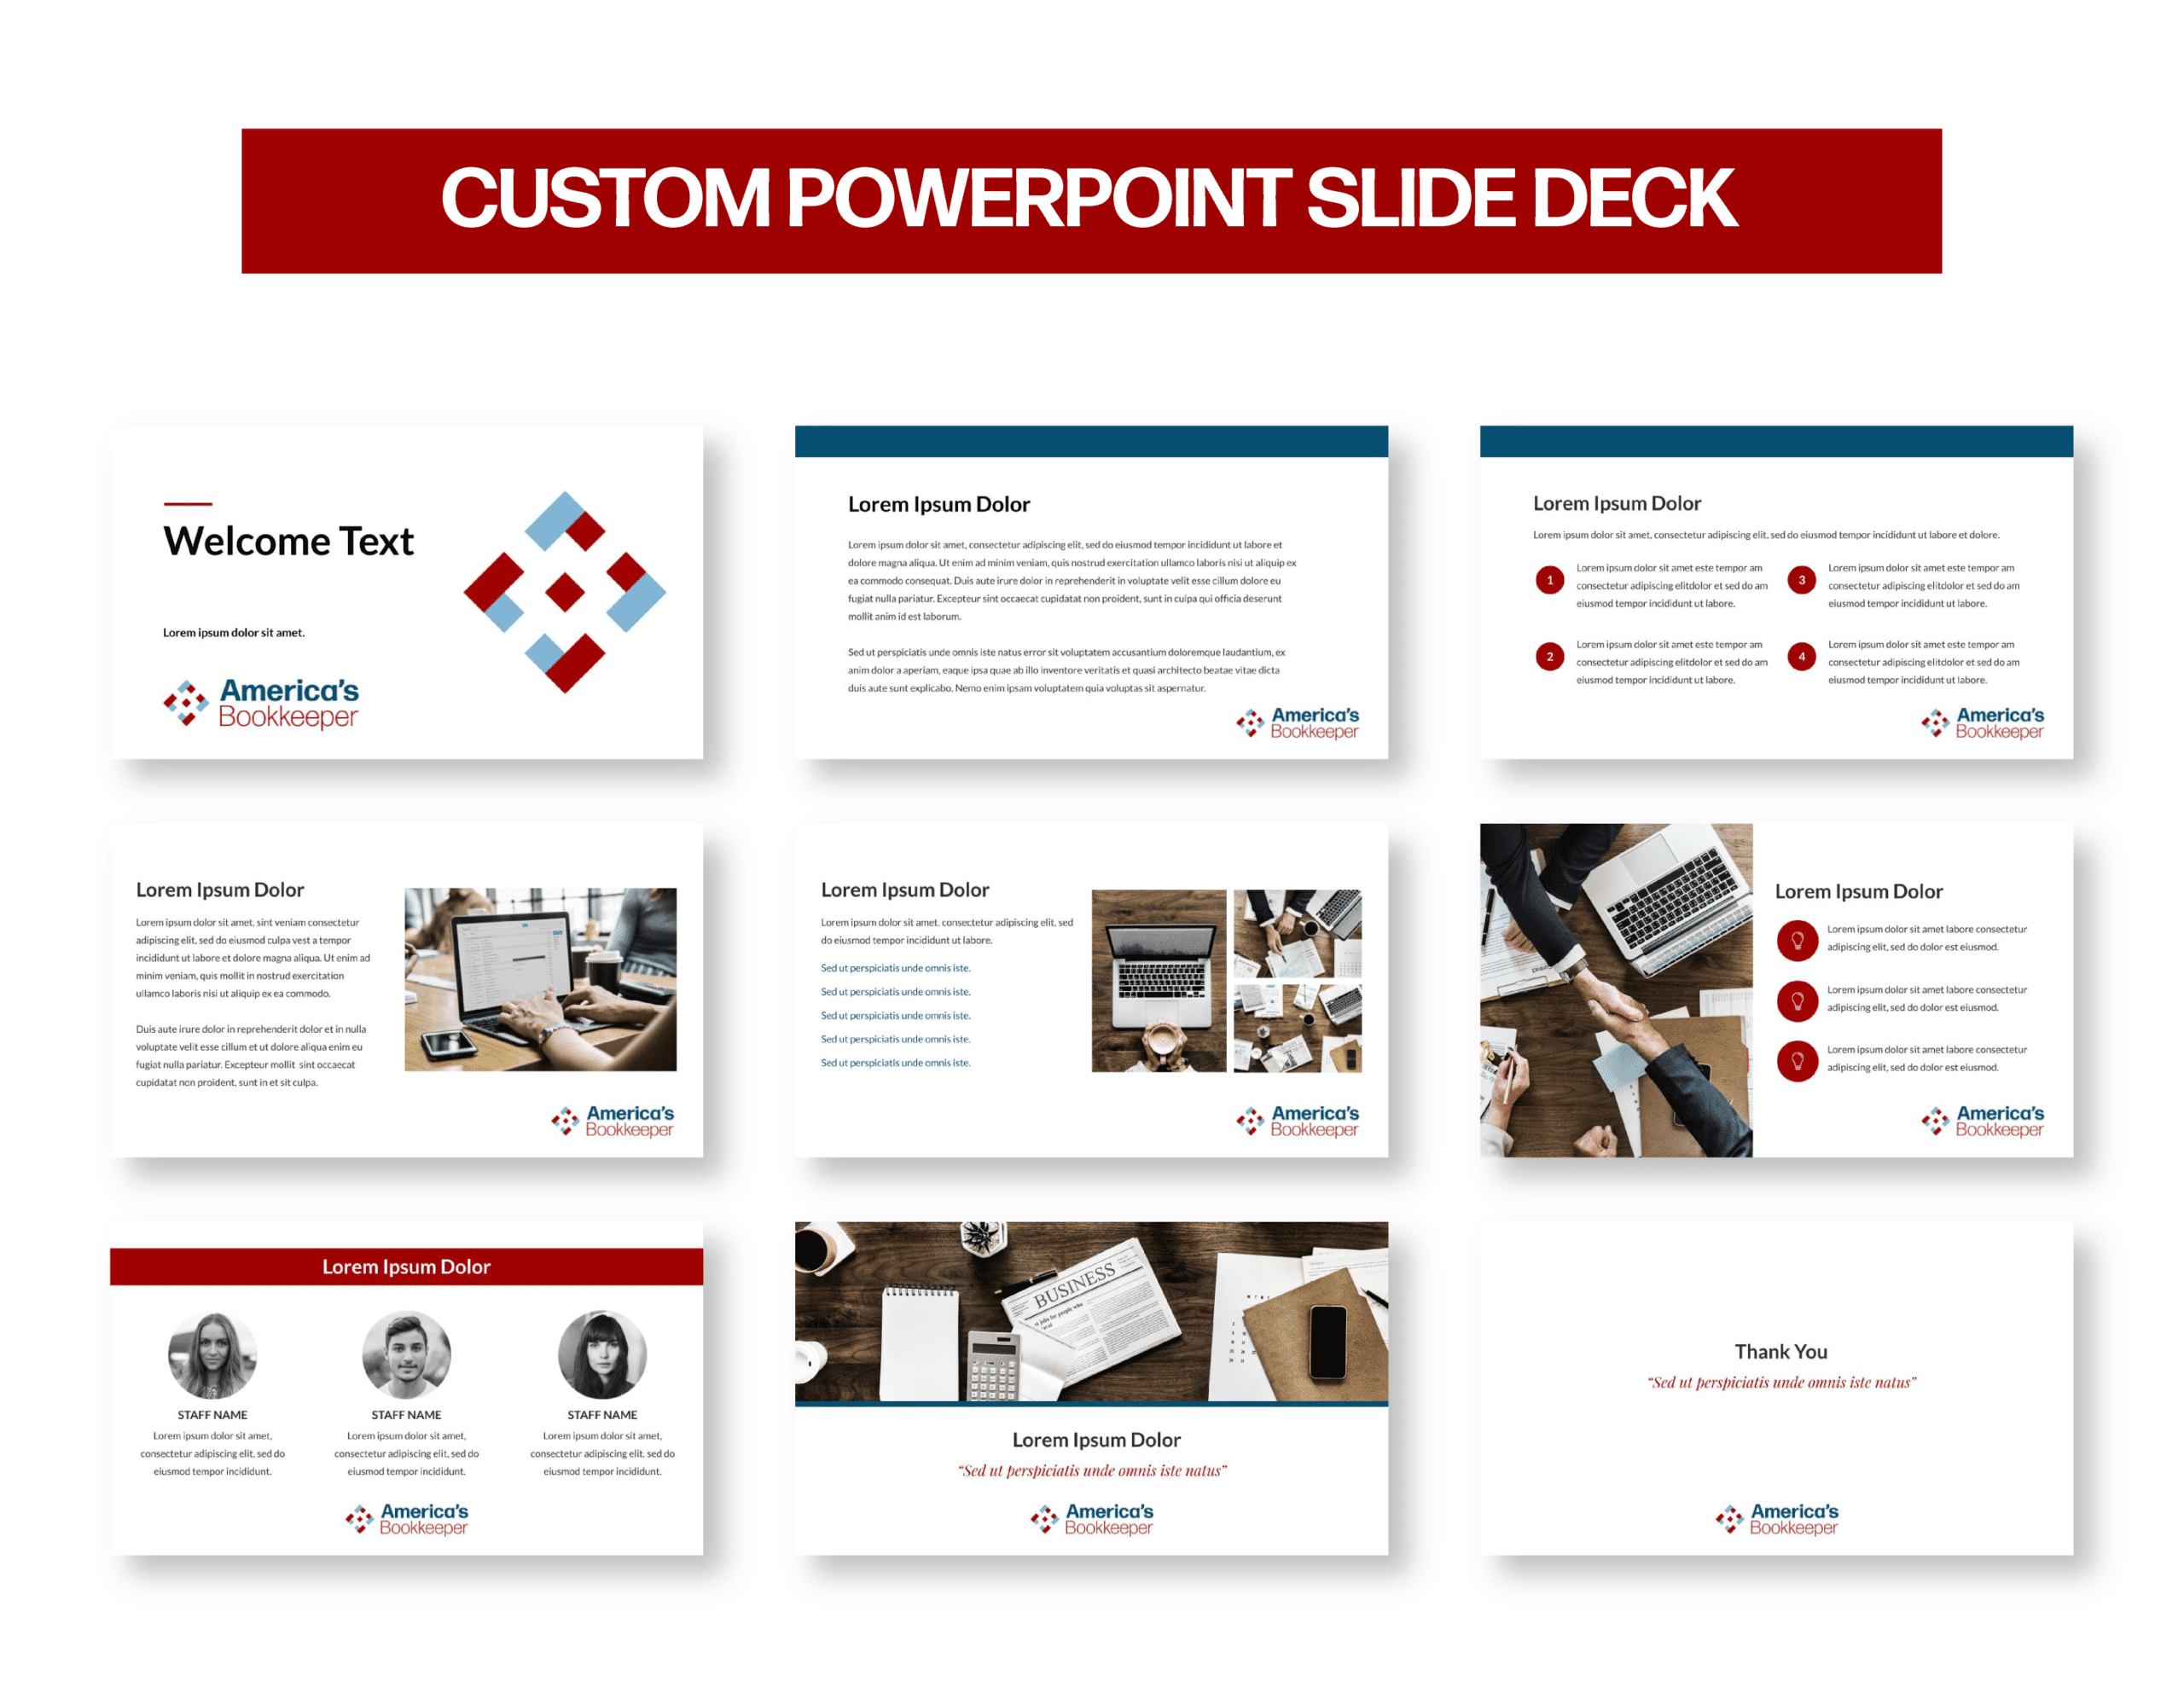 05Americas__Custom PowerPoint Slide Deck